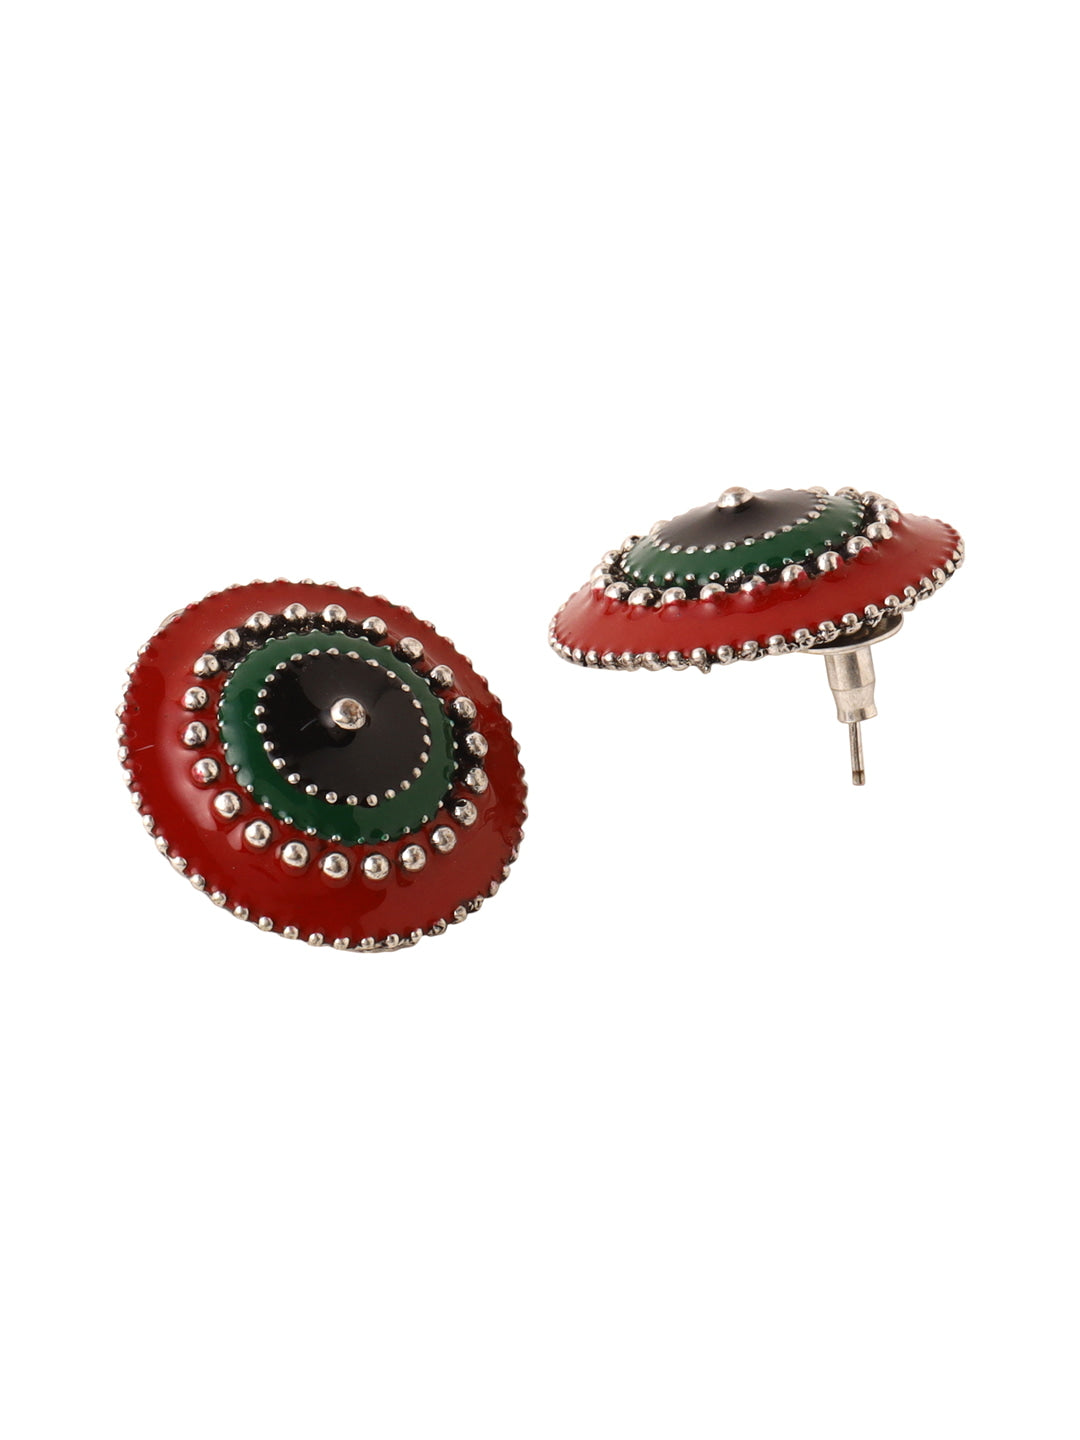 oxidised-meenakari-enameling-earrings-for-women-and-girls-viraasi